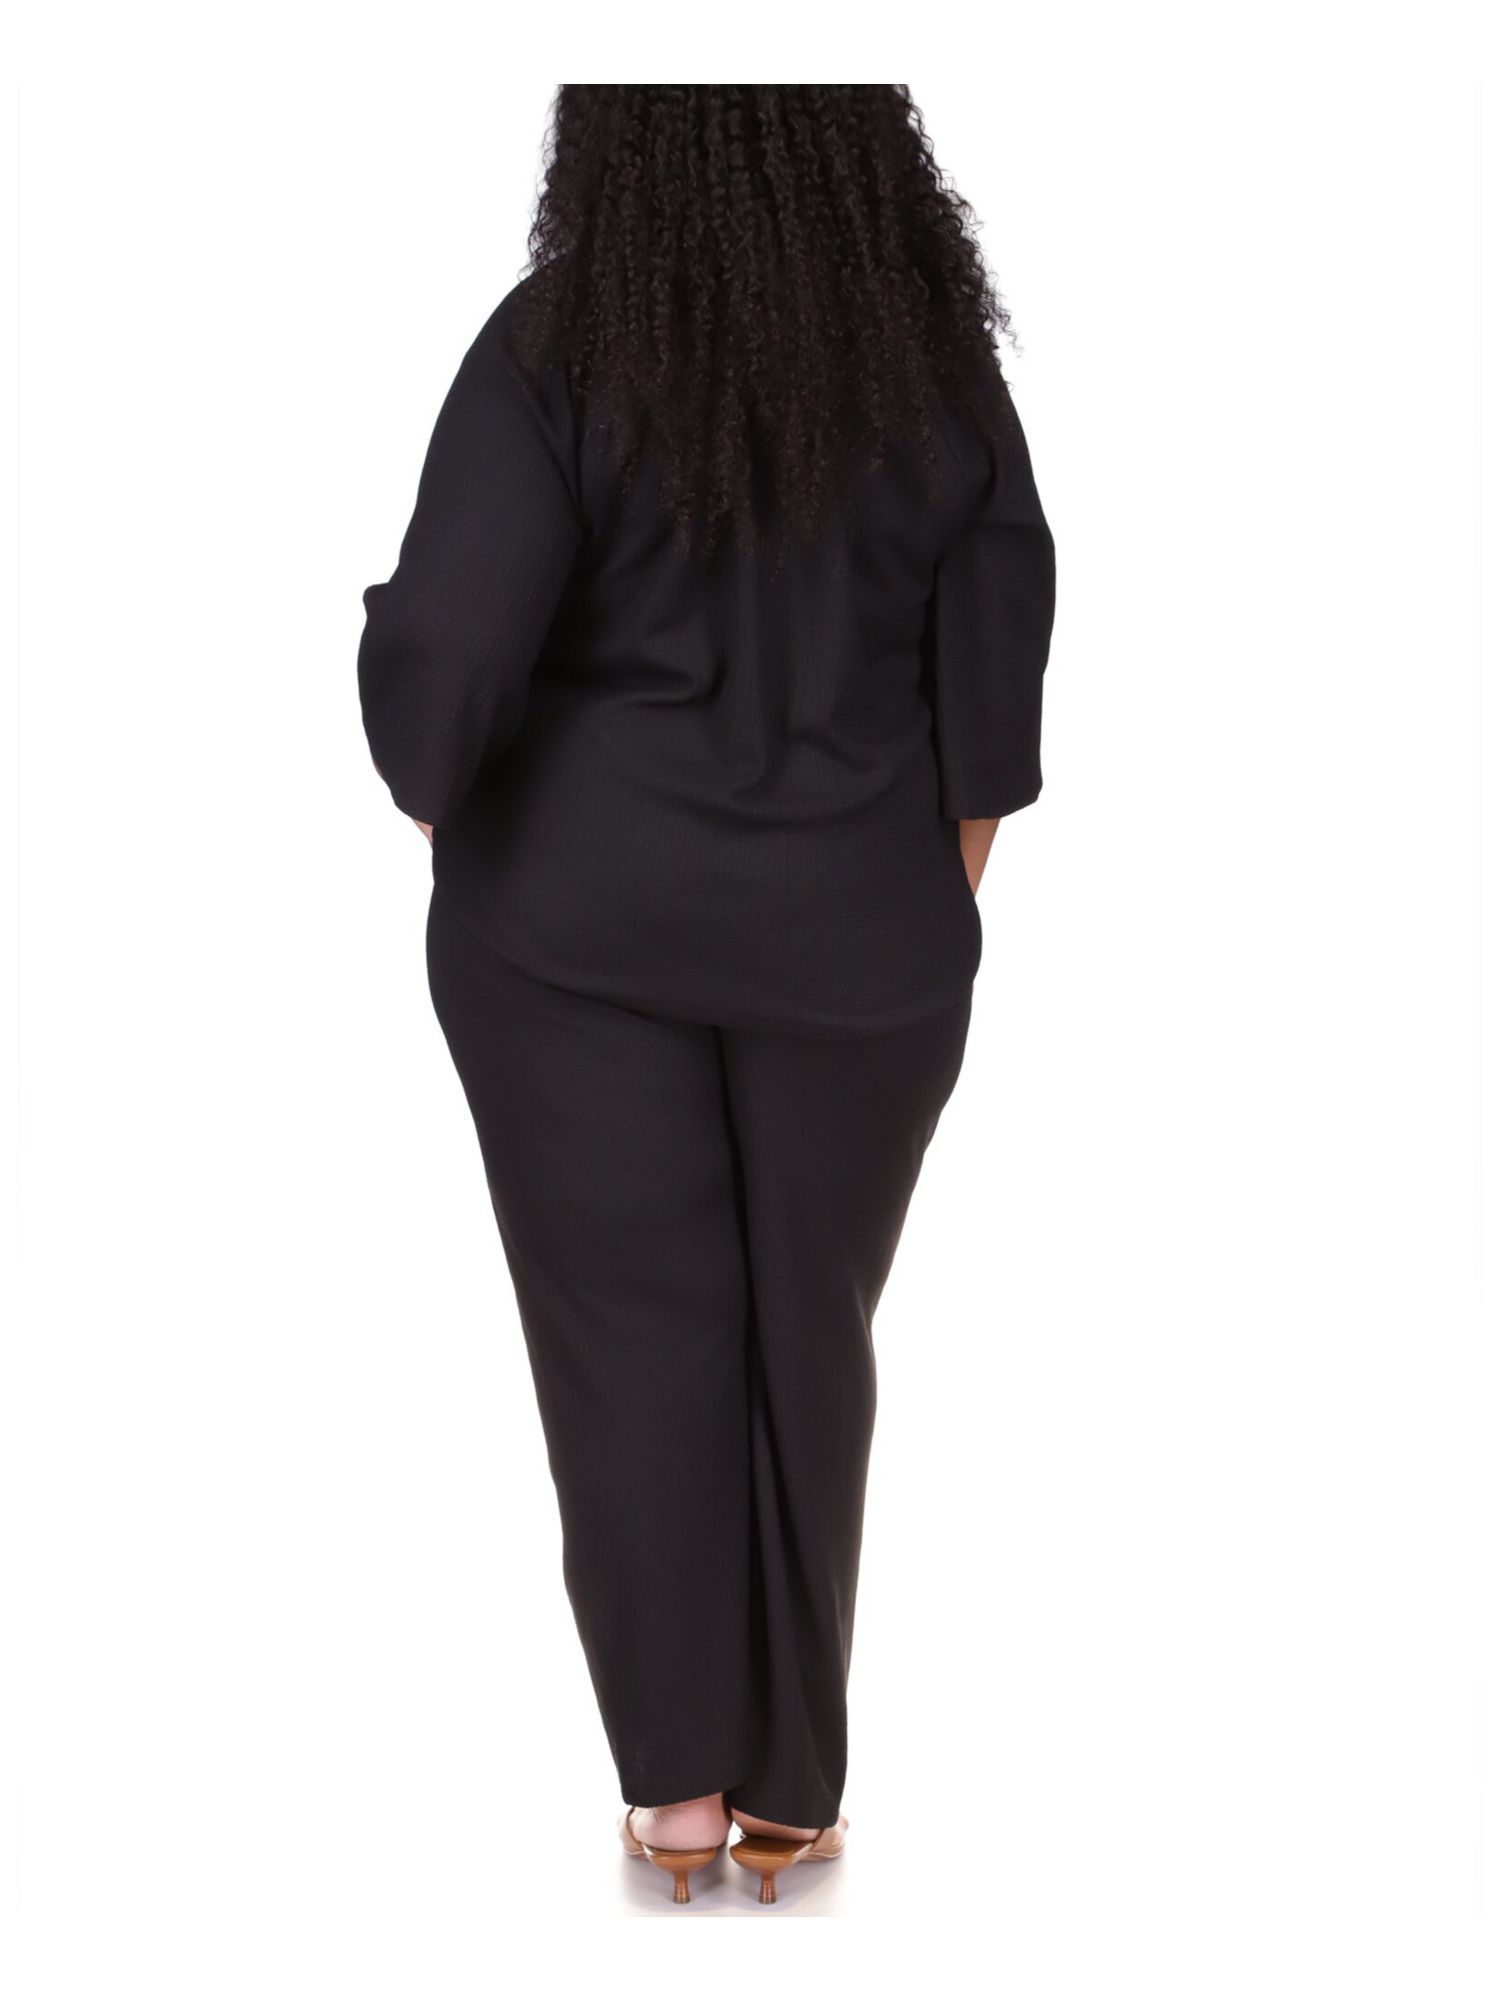 MICHAEL KORS Womens Black Textured Wide Leg Drawstring Waist High Waist Pants Plus 0X